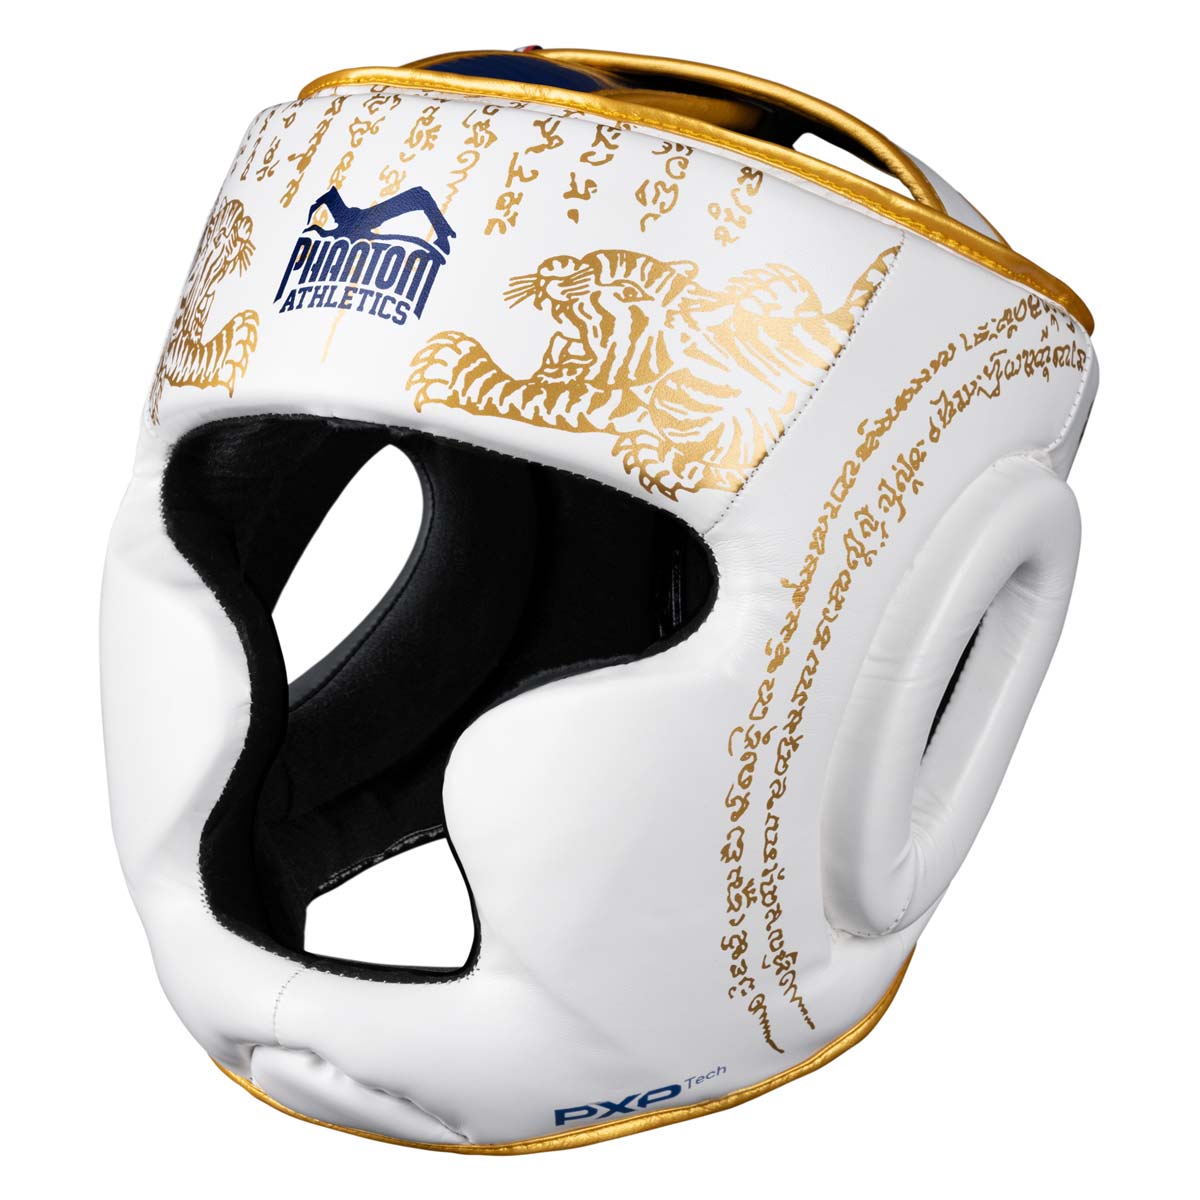 Protezione per la testa Phantom Muay Thai per boxe tailandese e sparring, competizione e allenamento MMA. Nel tradizionale design Sak Yant e nel colore bianco/oro.